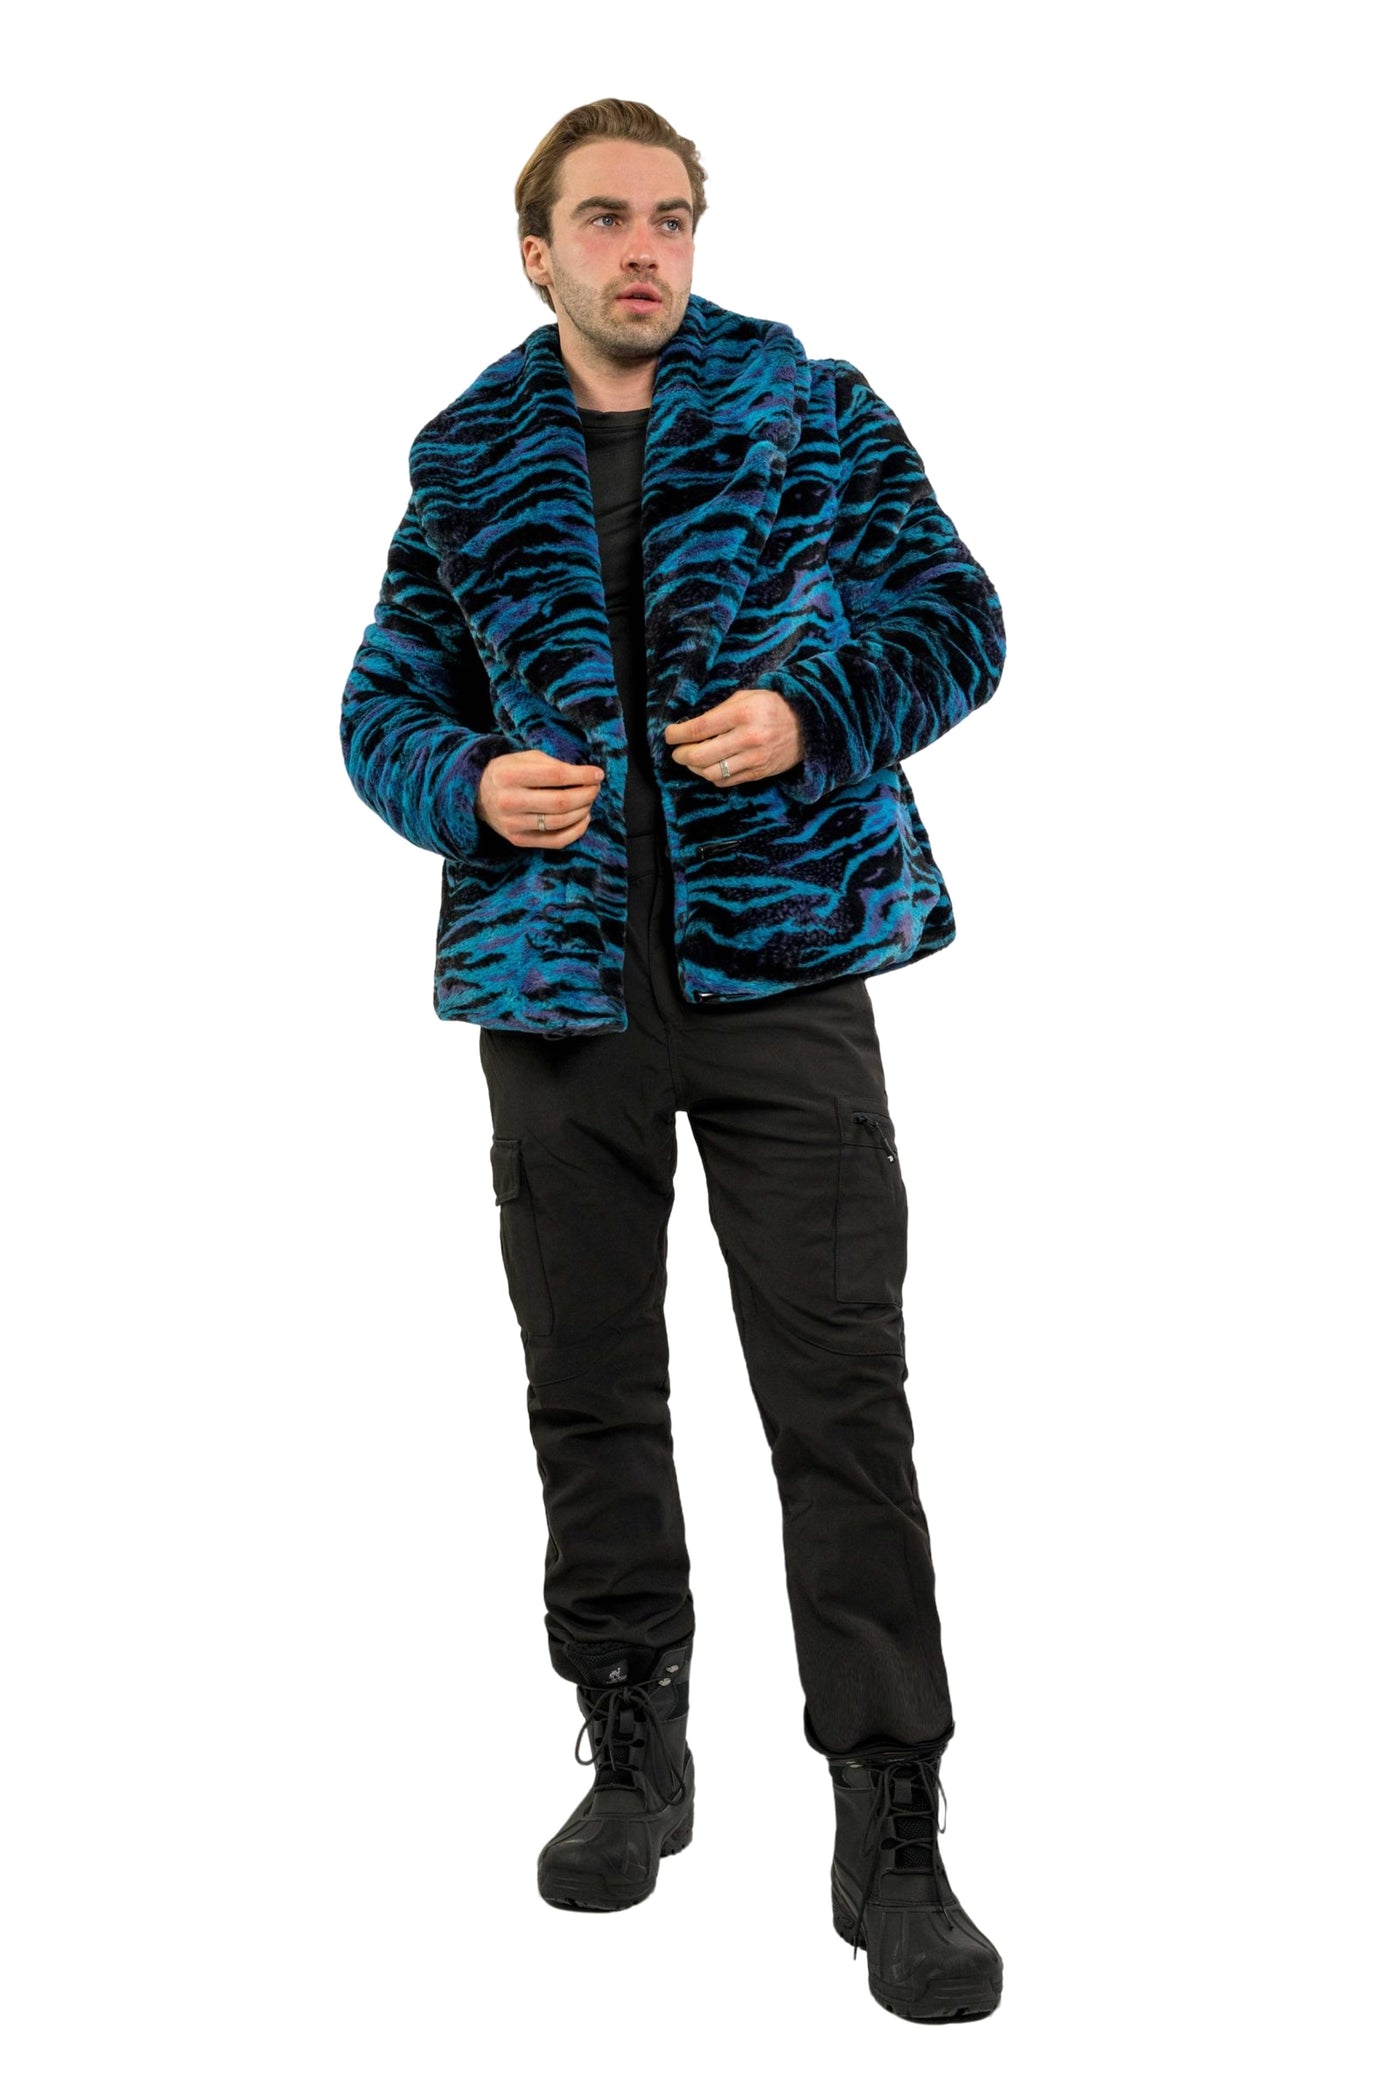 Men's Short Cozy Coat in "Electric Tiger"